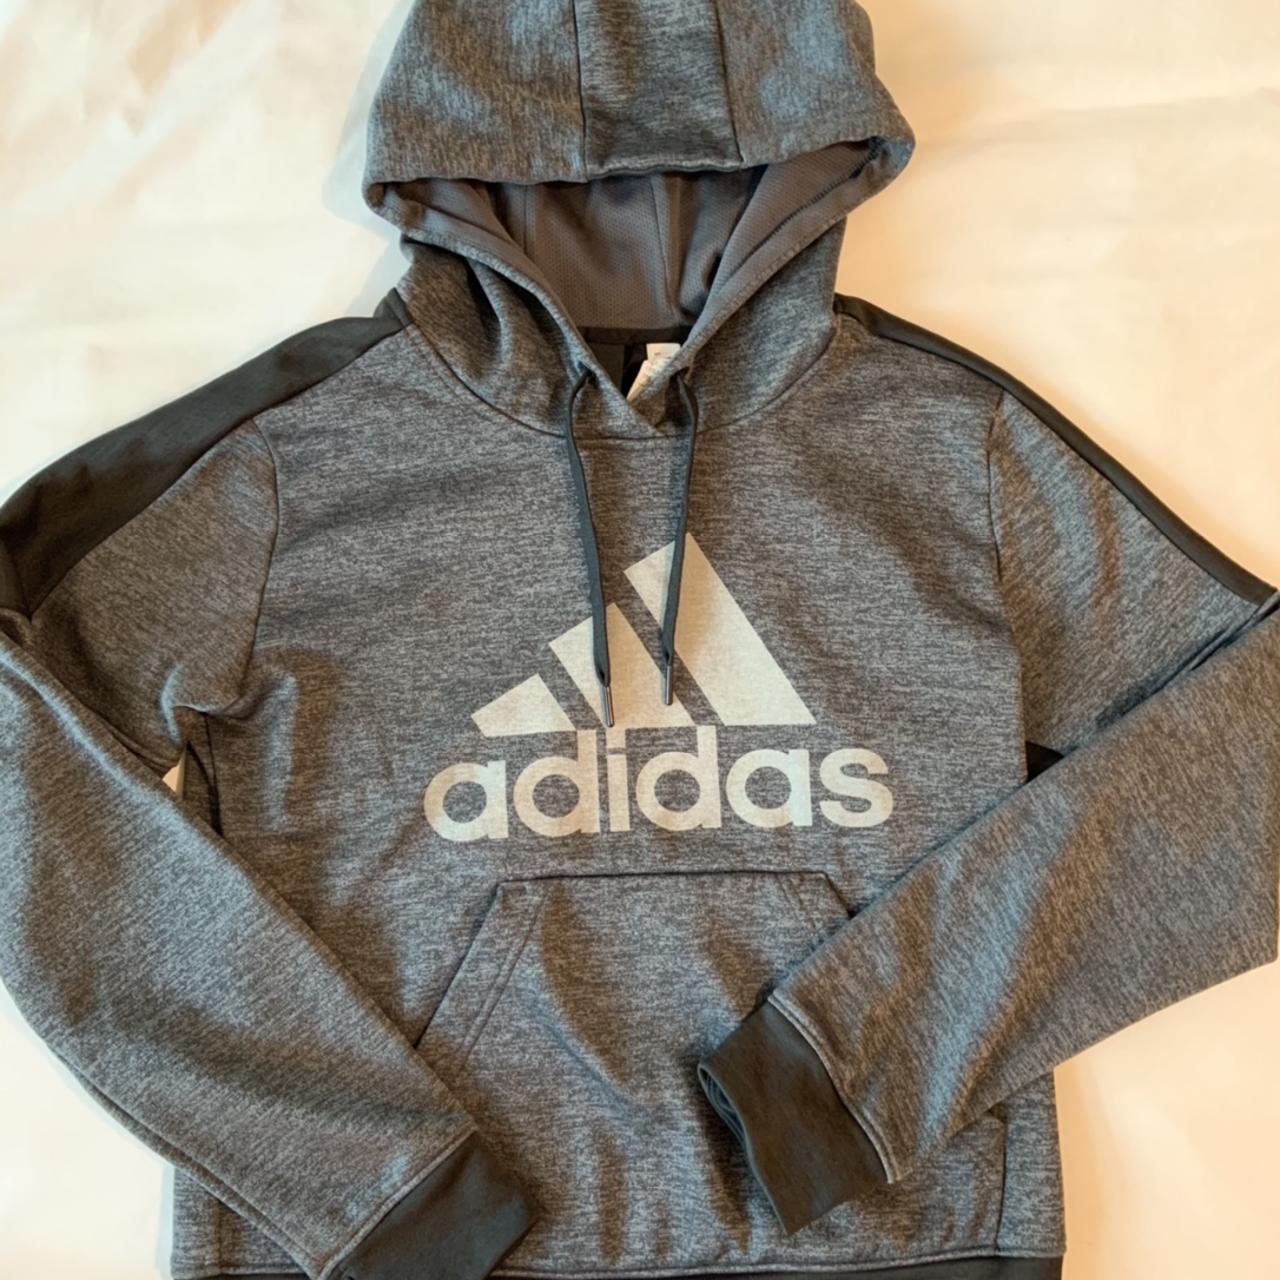 Adidas woman’s athletic hoodie Dark grey and... - Depop